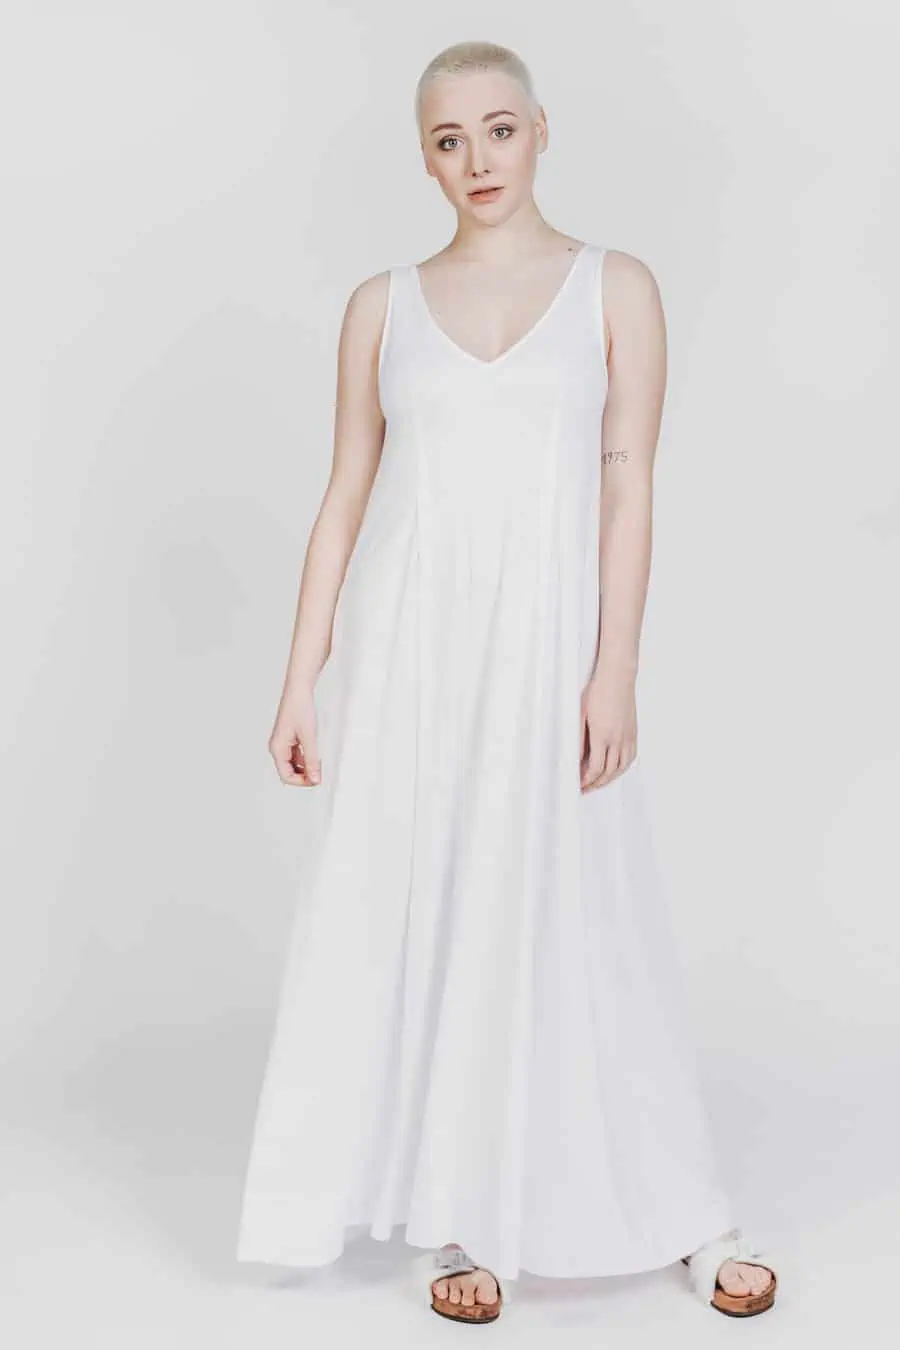 Deep White Black Modell SASHA langes Kleid weiß mit weißen Fellsandalen aus Holz von Devich, ärmelloses Sommerkleid mit V-Ausschnitt, Ansicht gesamt von vorne